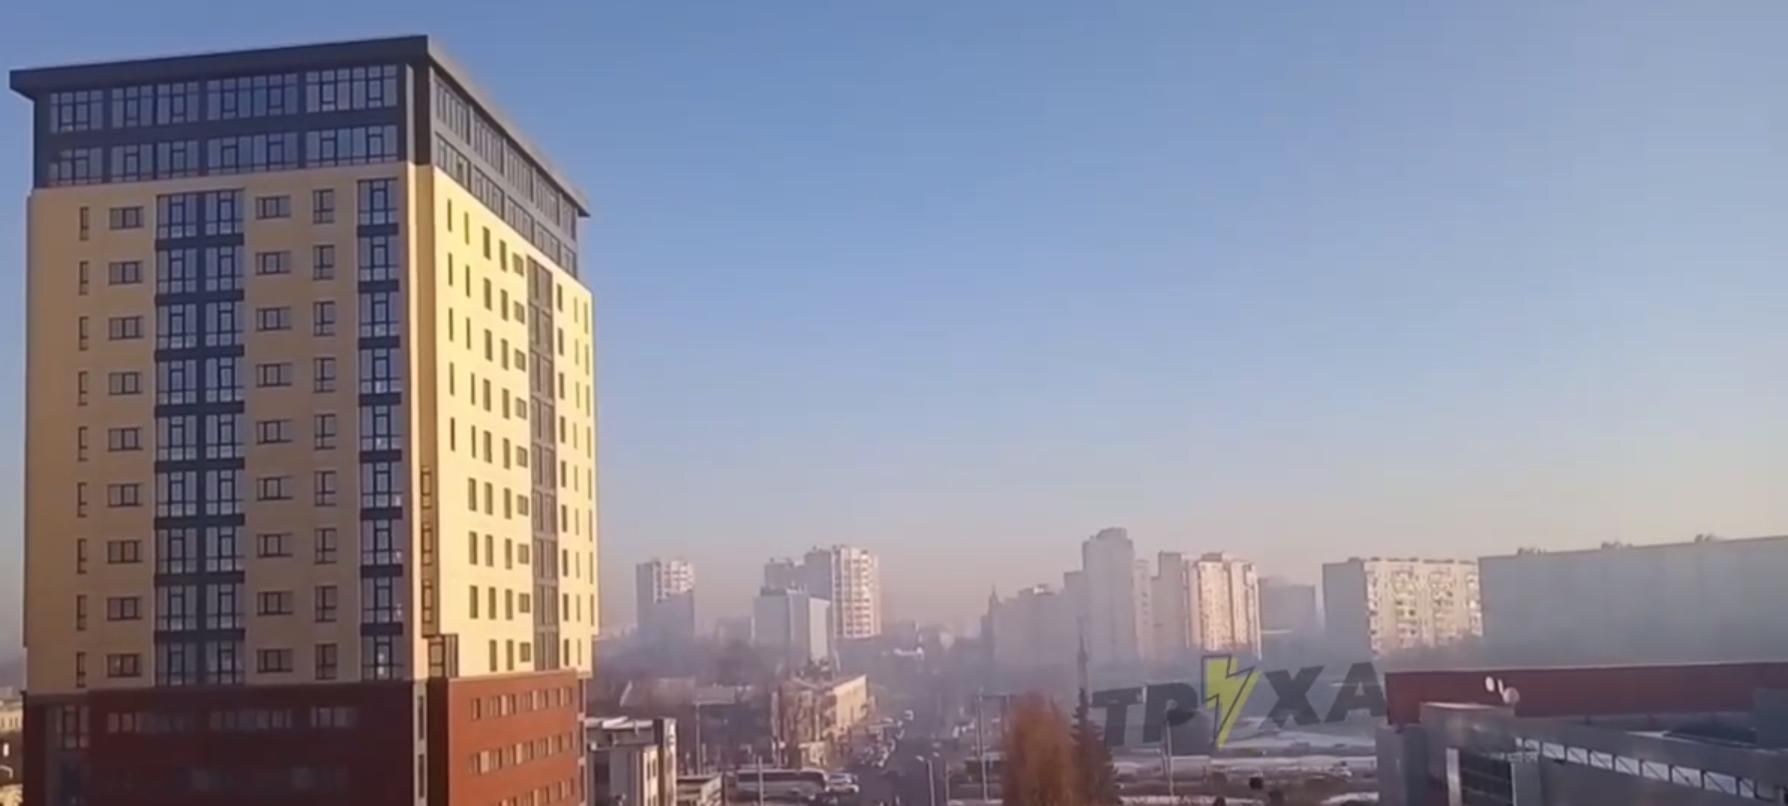 Харків оповив густий смог: містяни скаржаться на проблеми з диханням - Харків